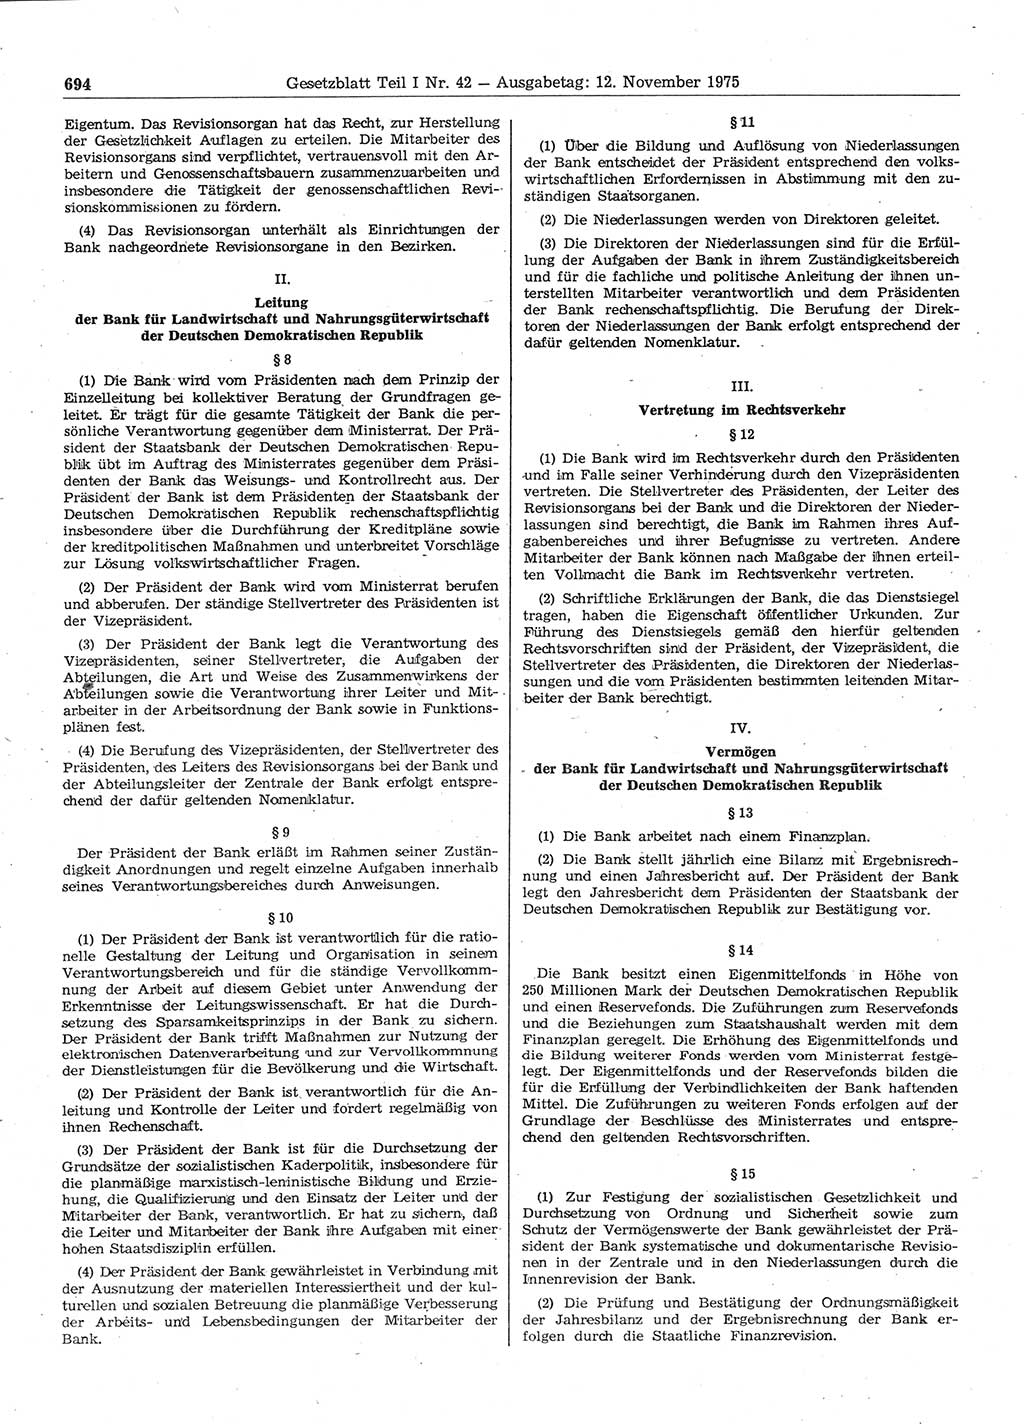 Gesetzblatt (GBl.) der Deutschen Demokratischen Republik (DDR) Teil Ⅰ 1975, Seite 694 (GBl. DDR Ⅰ 1975, S. 694)